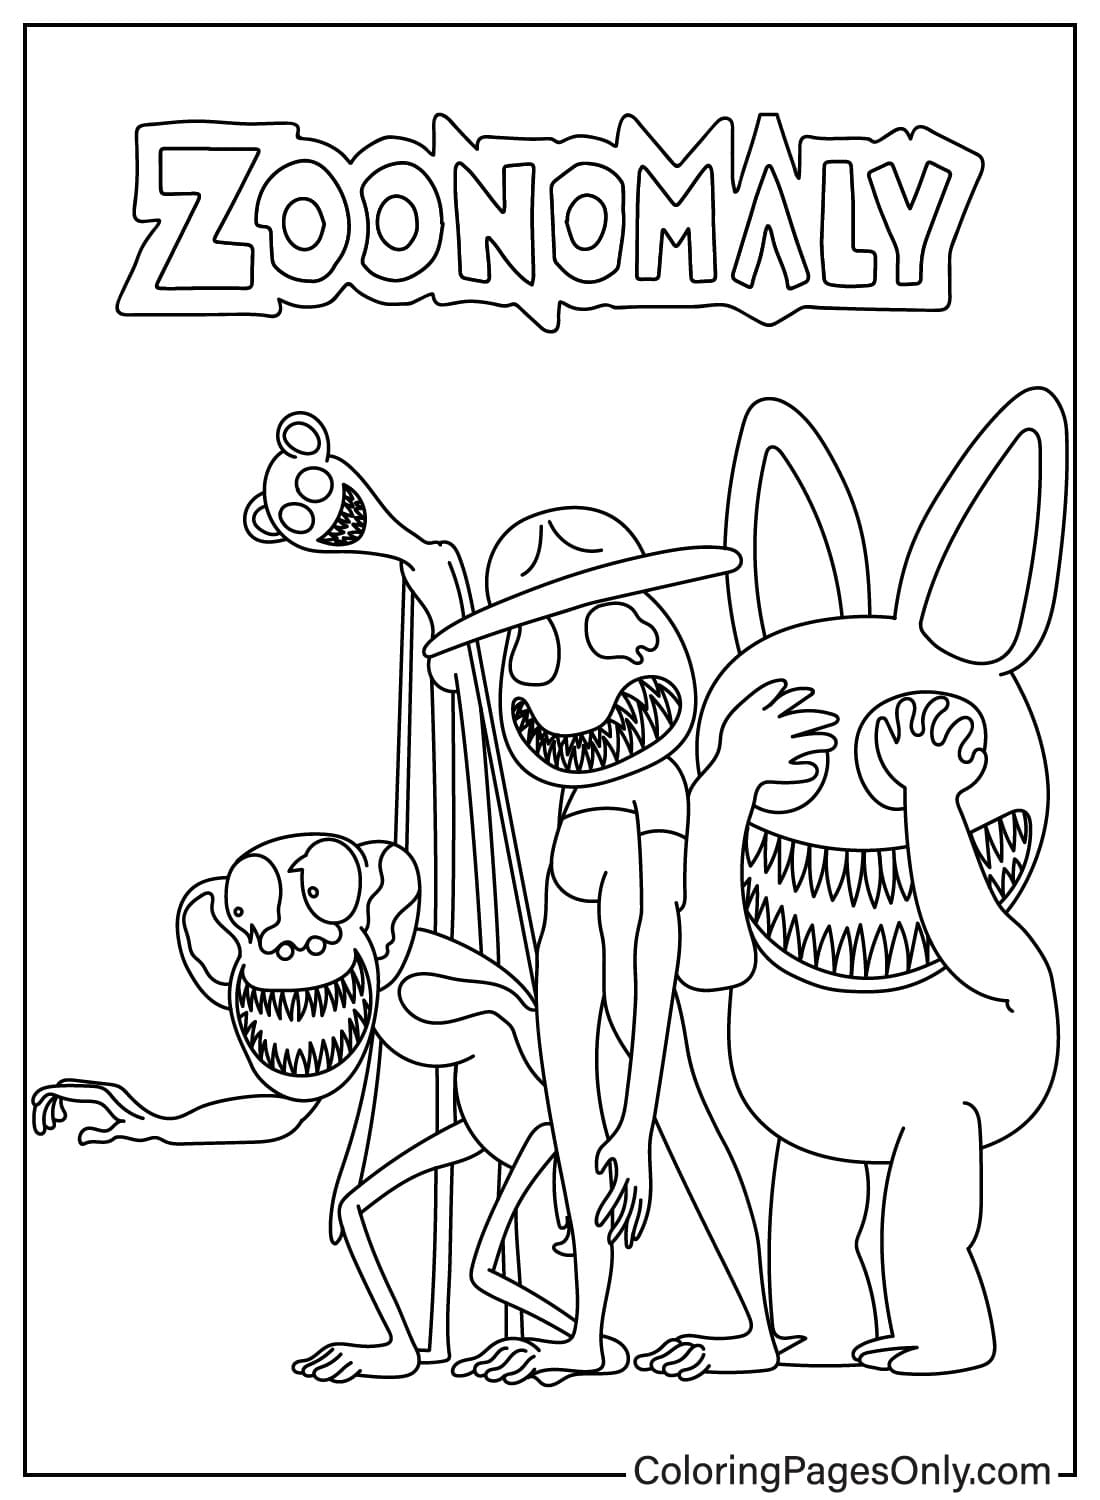 Desenhos para colorir de Zoonomaly de personagens de Zoonomaly